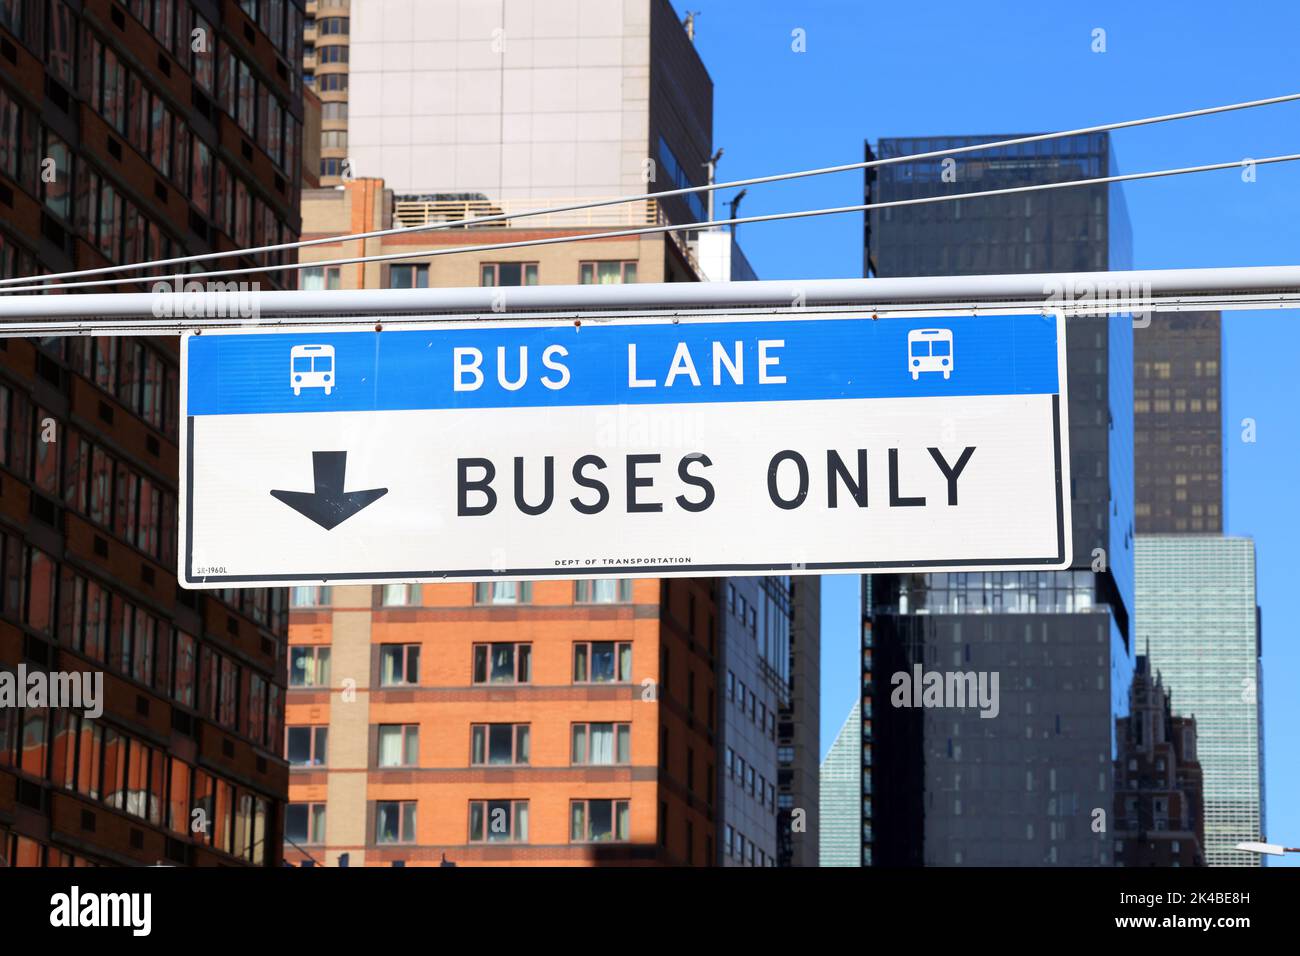 Bus Lane, Beschilderung nur für Busse auf einer New York City Straße. Das Verkehrsschild weist darauf hin, dass die Fahrspur auf Busse oder Abbiegungen beschränkt ist. Stockfoto